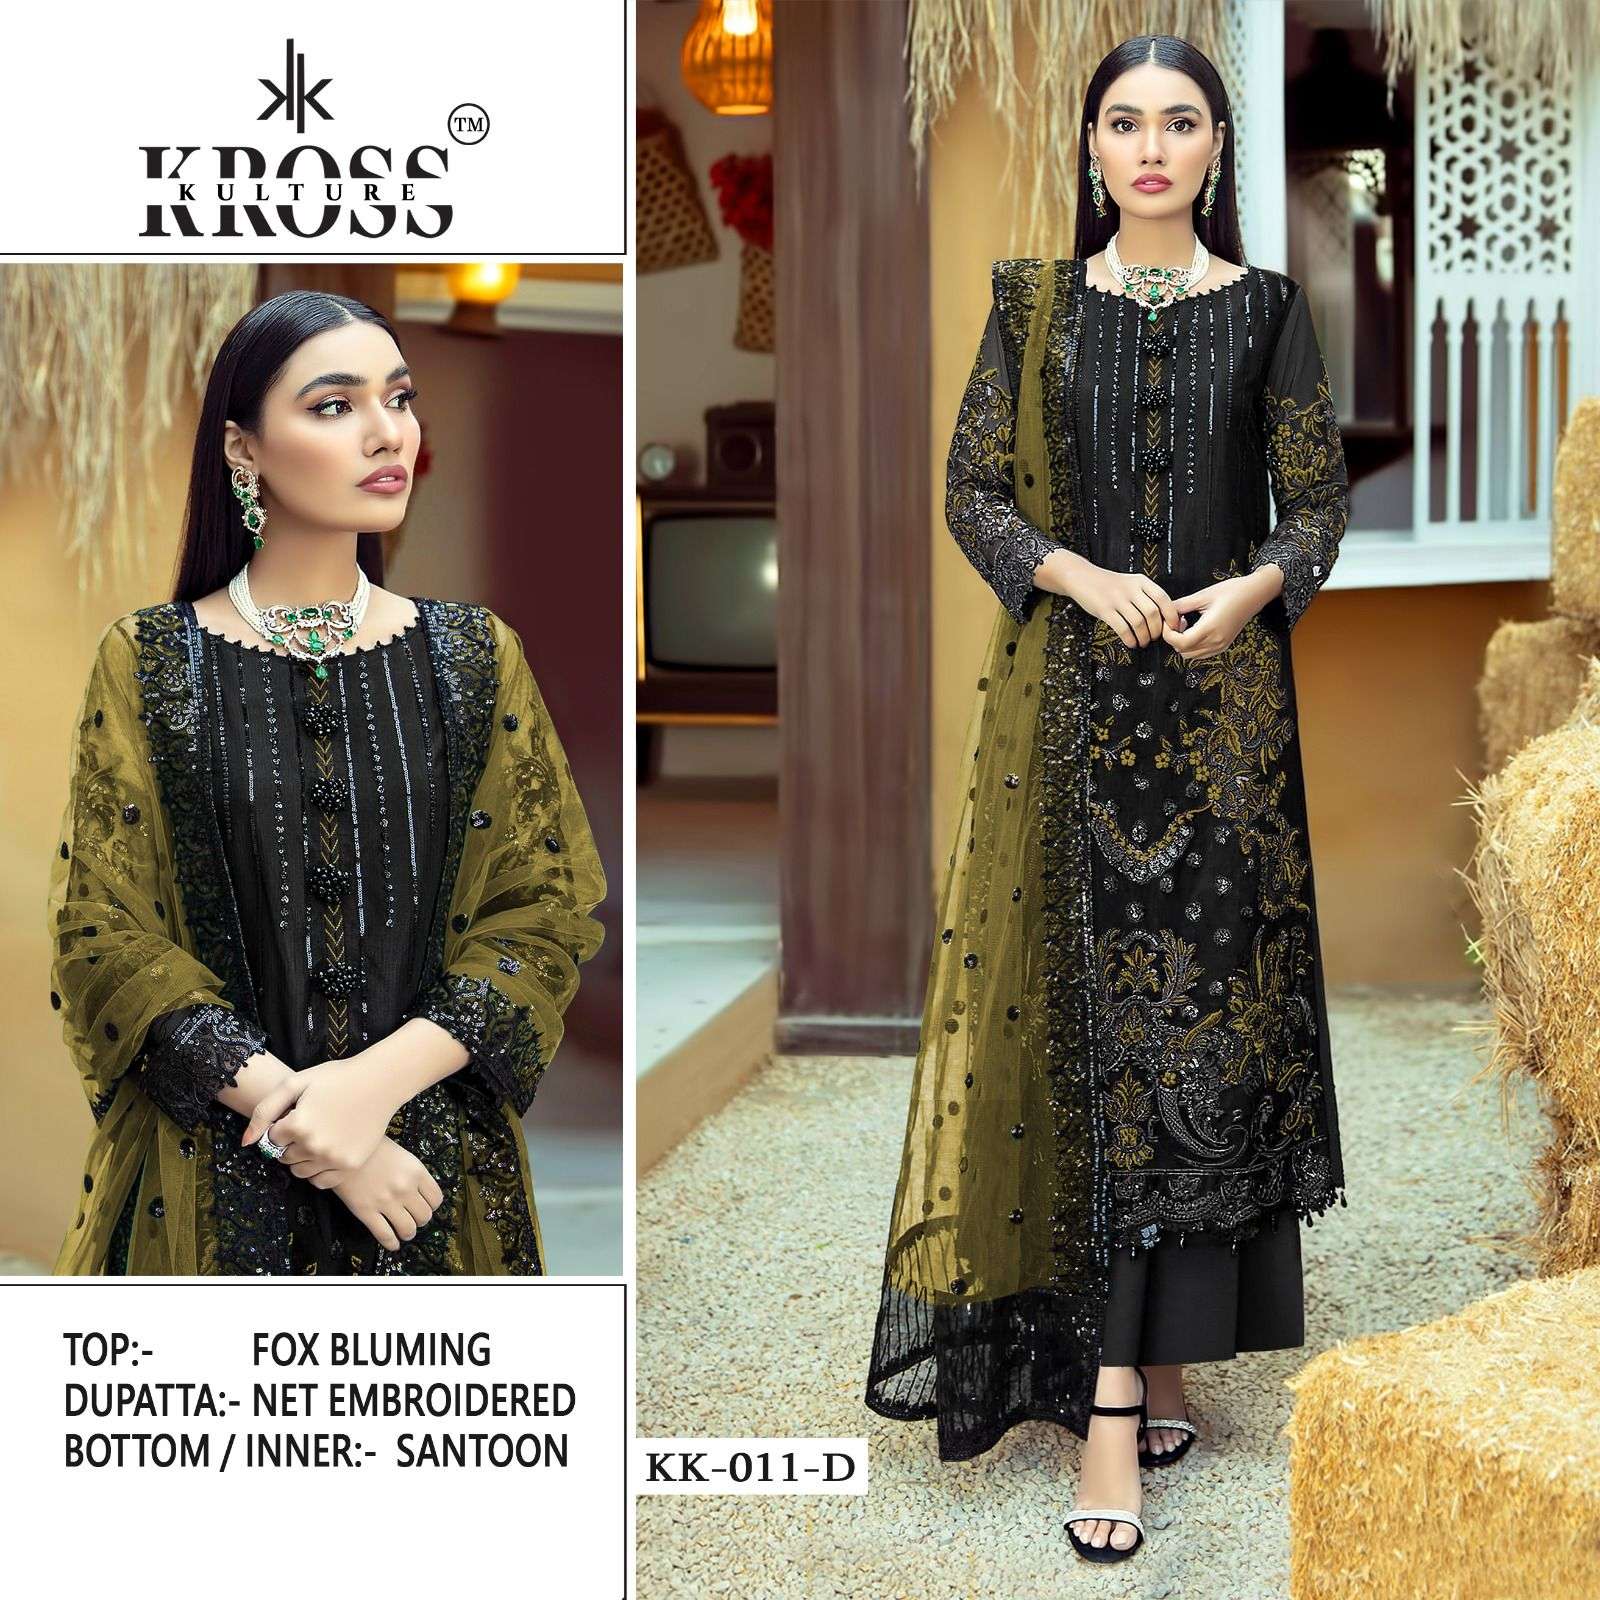 kross kulture kk 011 colour edition bluming designer pakisatni suits online best price surat